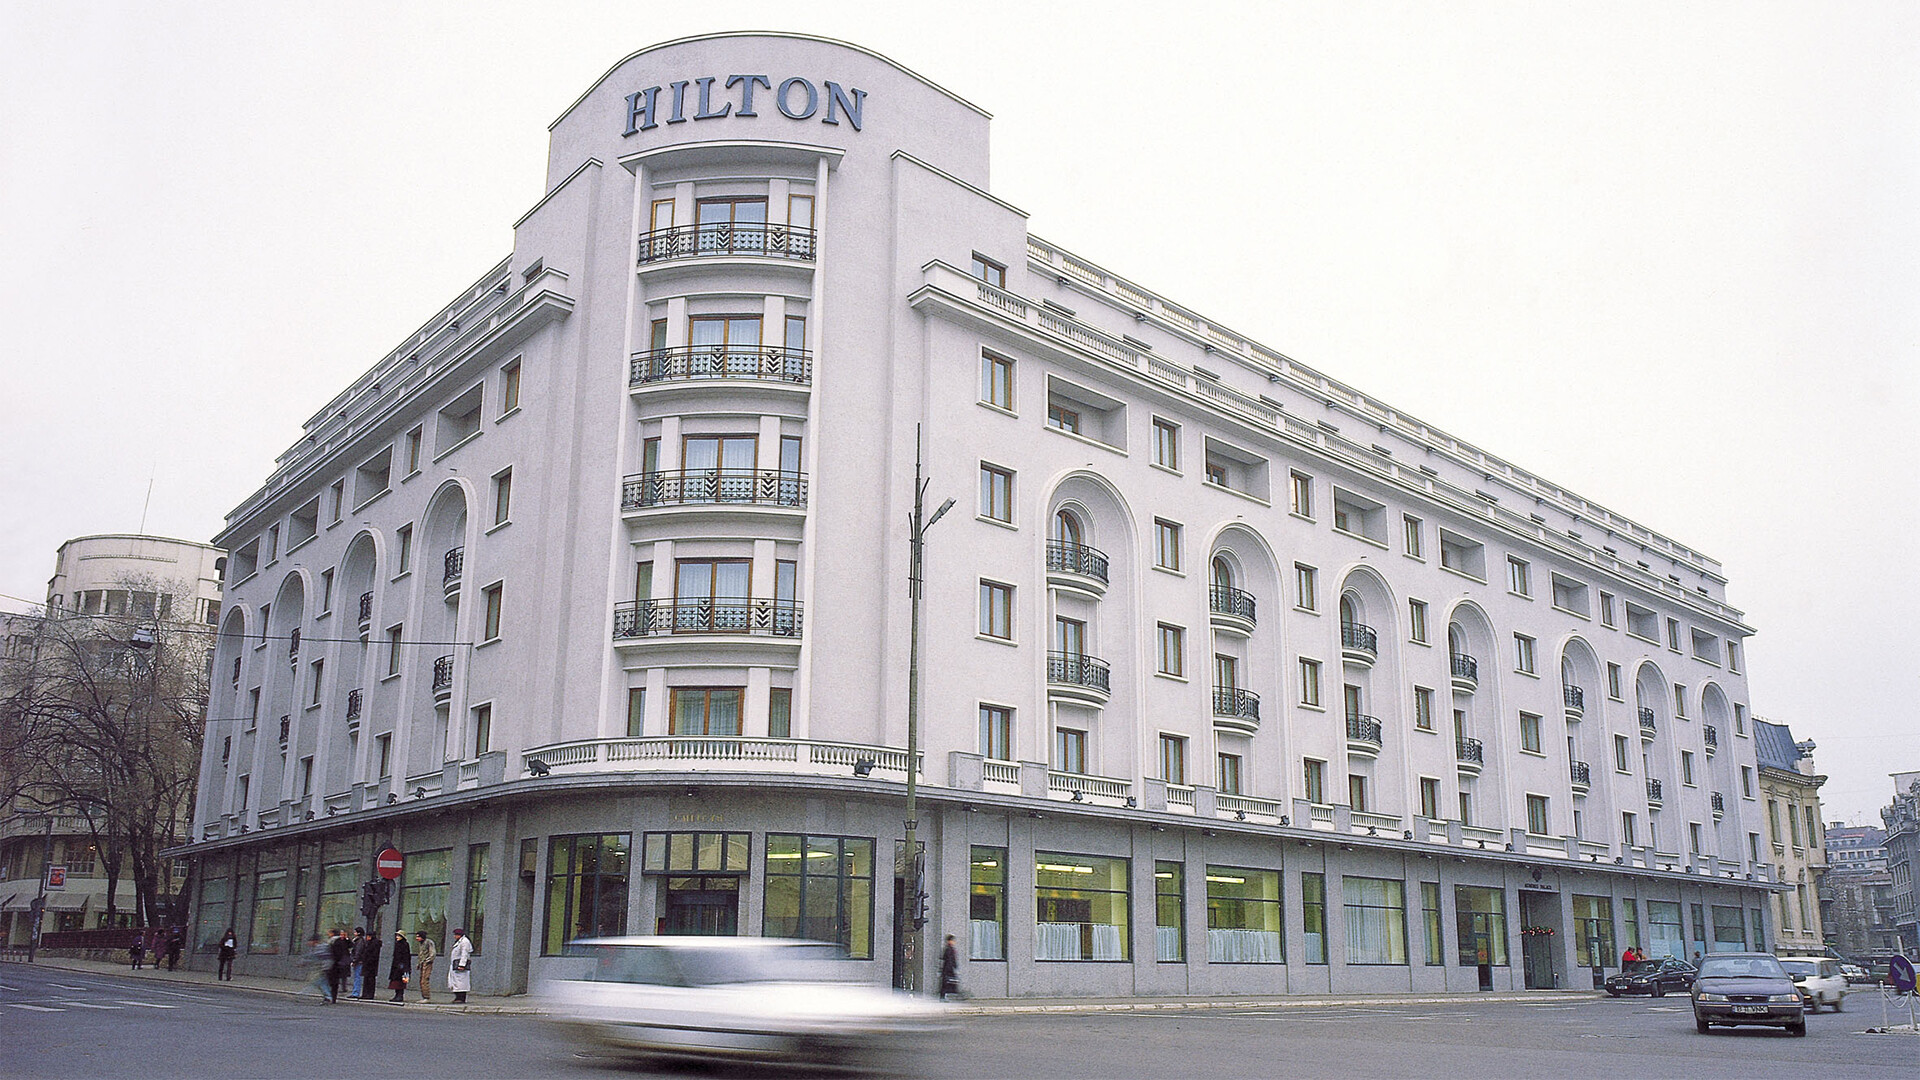 Athenee Palace Hilton Hotel